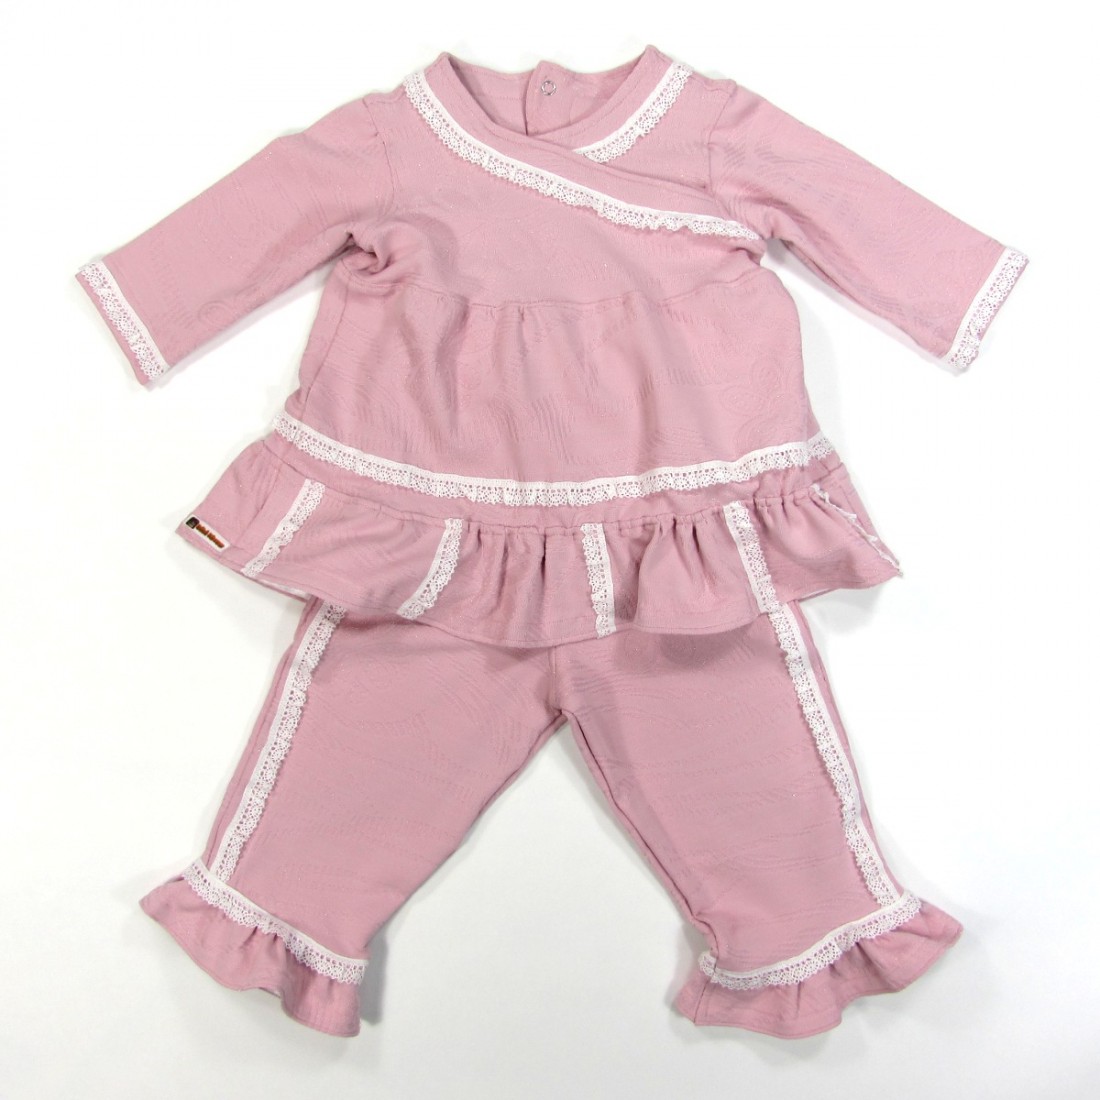 Tunique et pantalon en maille rose pailletée volants et dentelle bébé fille 18 mois